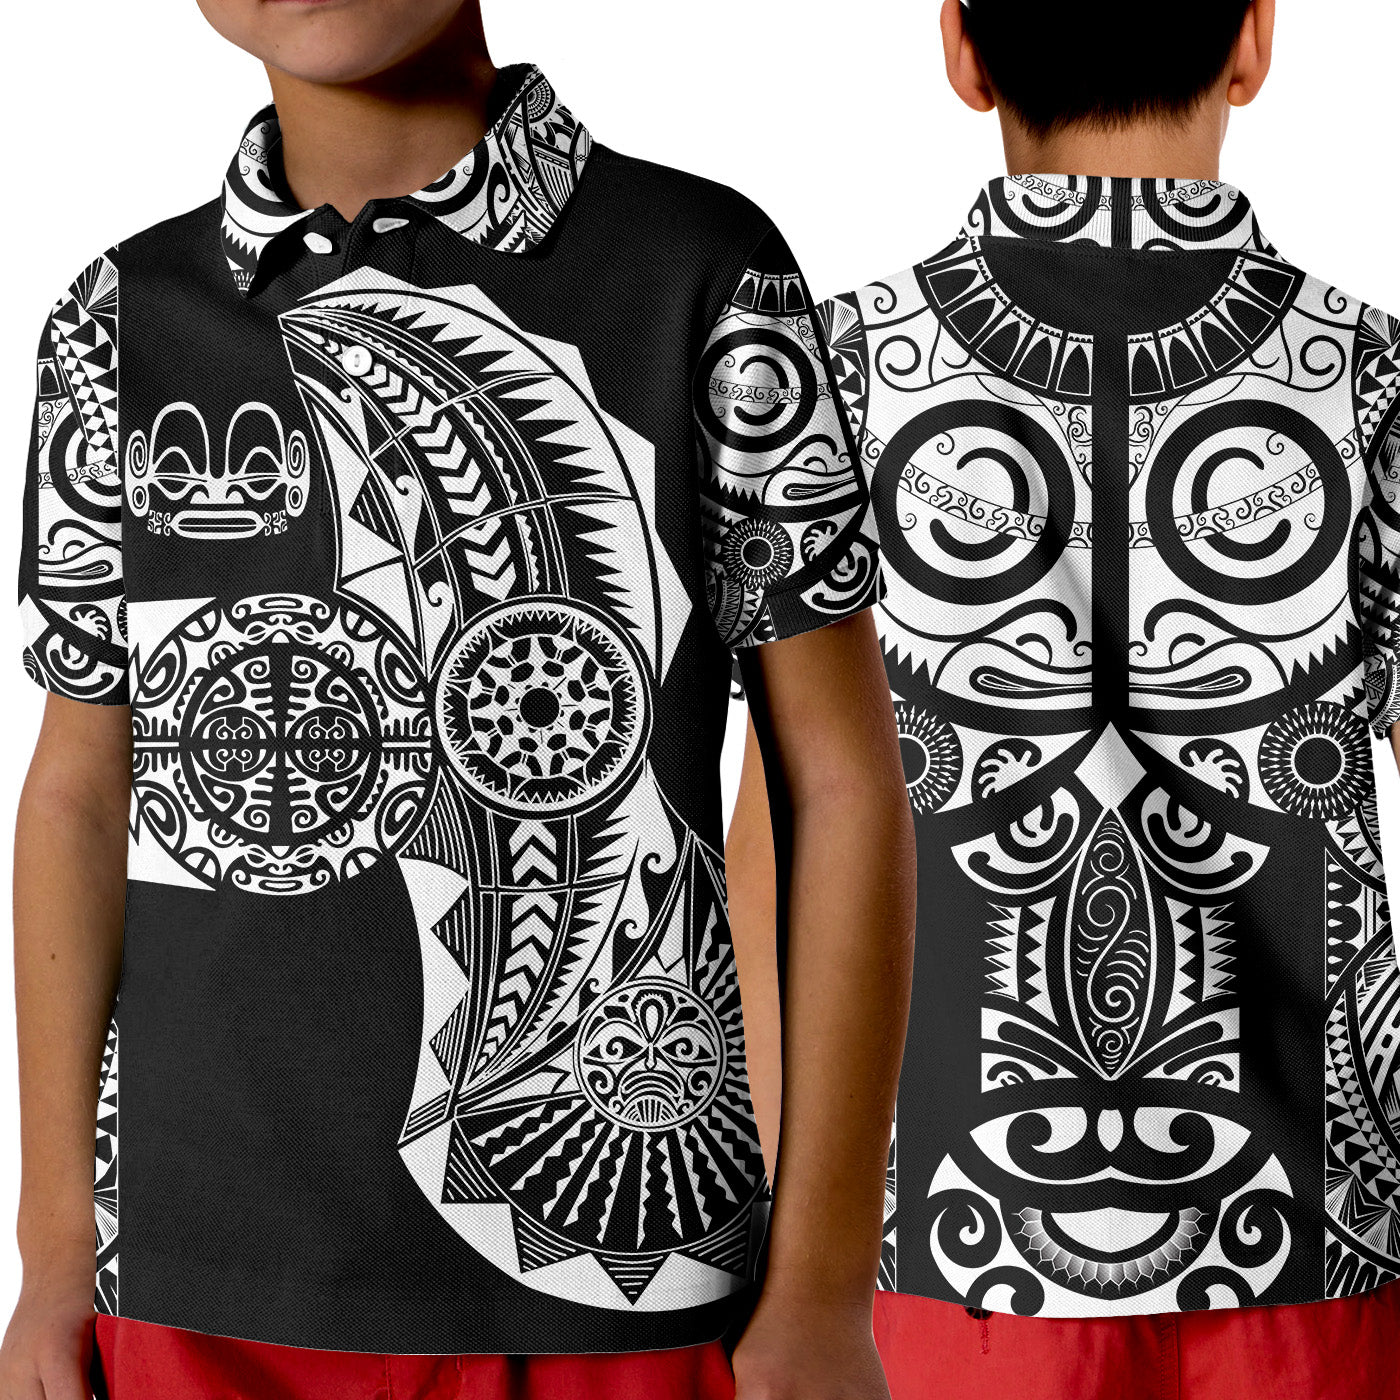 (Custom Personalised) Marquesas Islands Polo Shirt KID Marquesan Tattoo Original Style - Black LT8 Unisex Black - Polynesian Pride